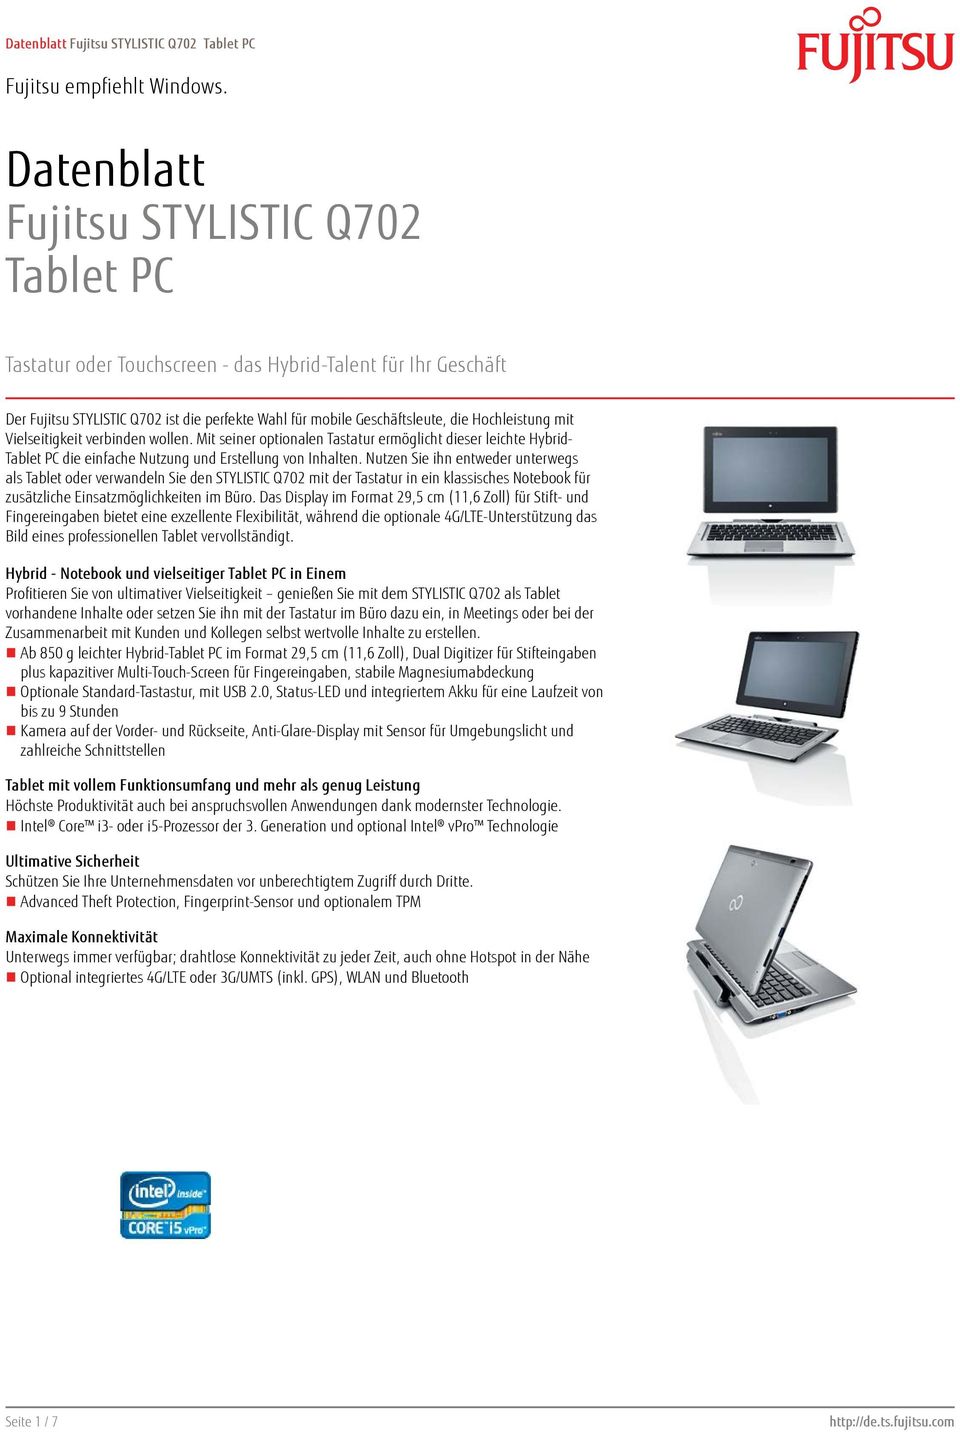 Mit seiner optionalen Tastatur ermöglicht dieser leichte Hybrid- Tablet PC die einfache Nutzung und Erstellung von Inhalten.